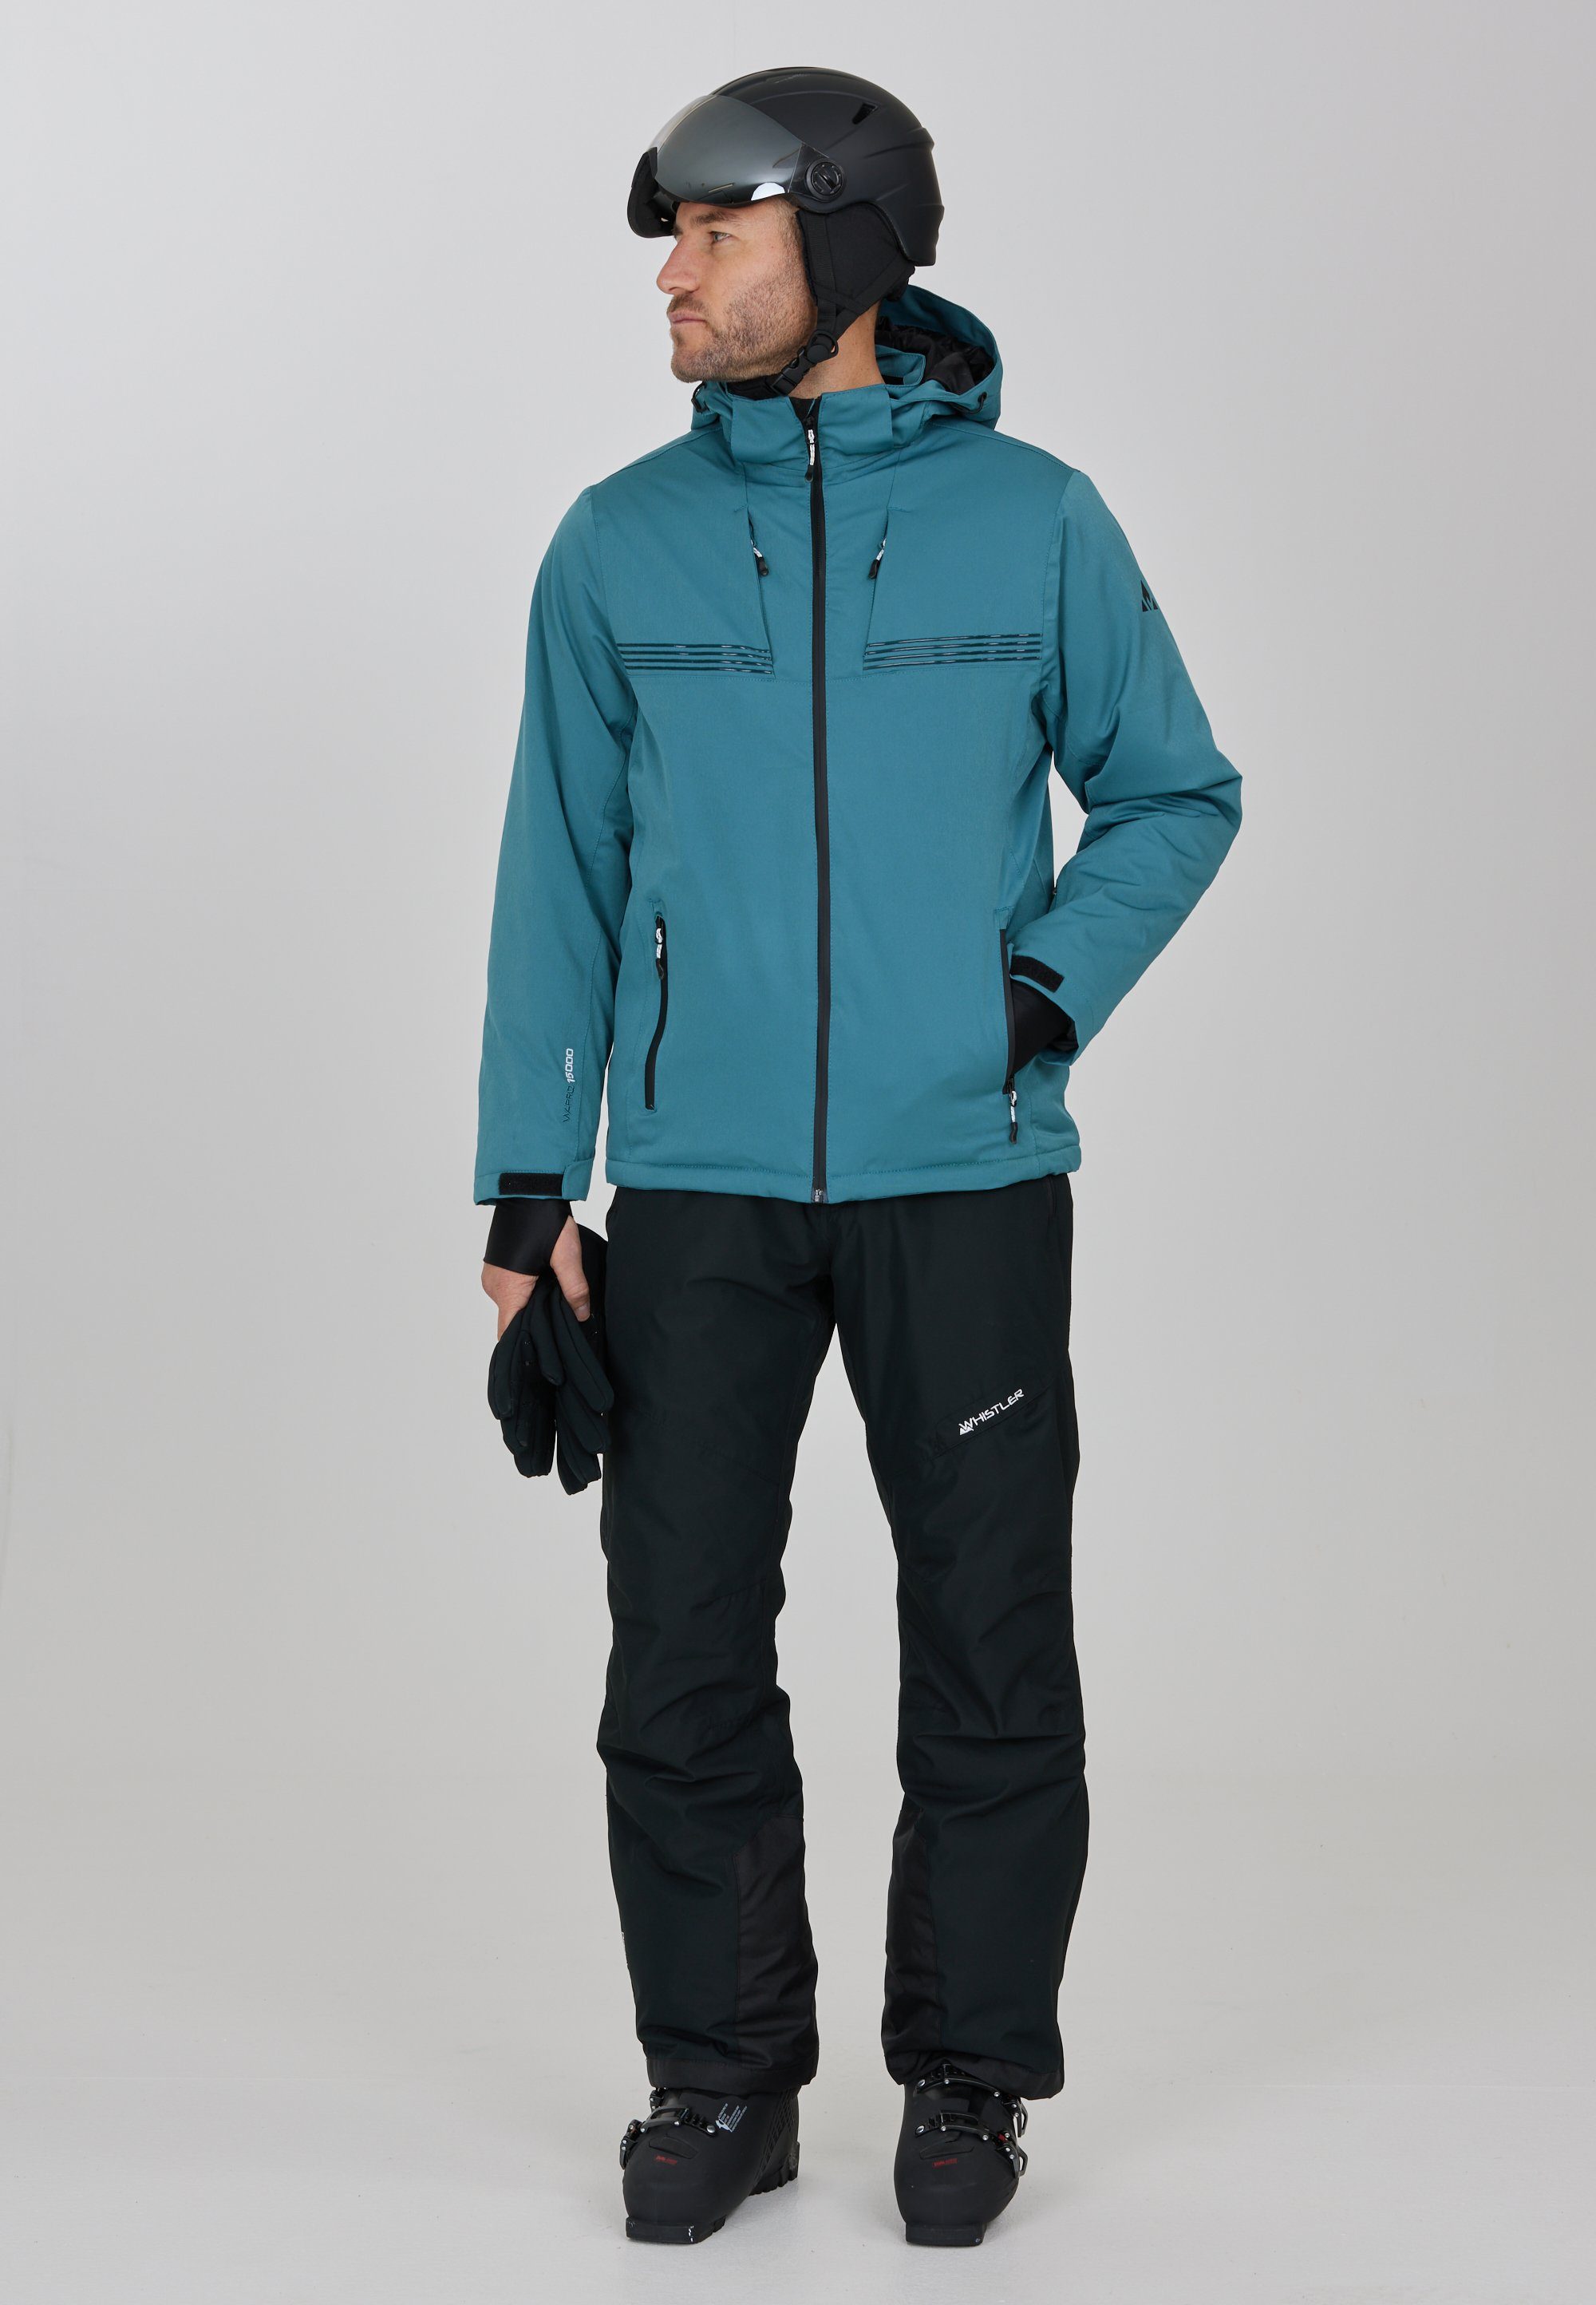 JESPER Wintersport-Ausstattung mit WHISTLER Skijacke hochwertiger blau